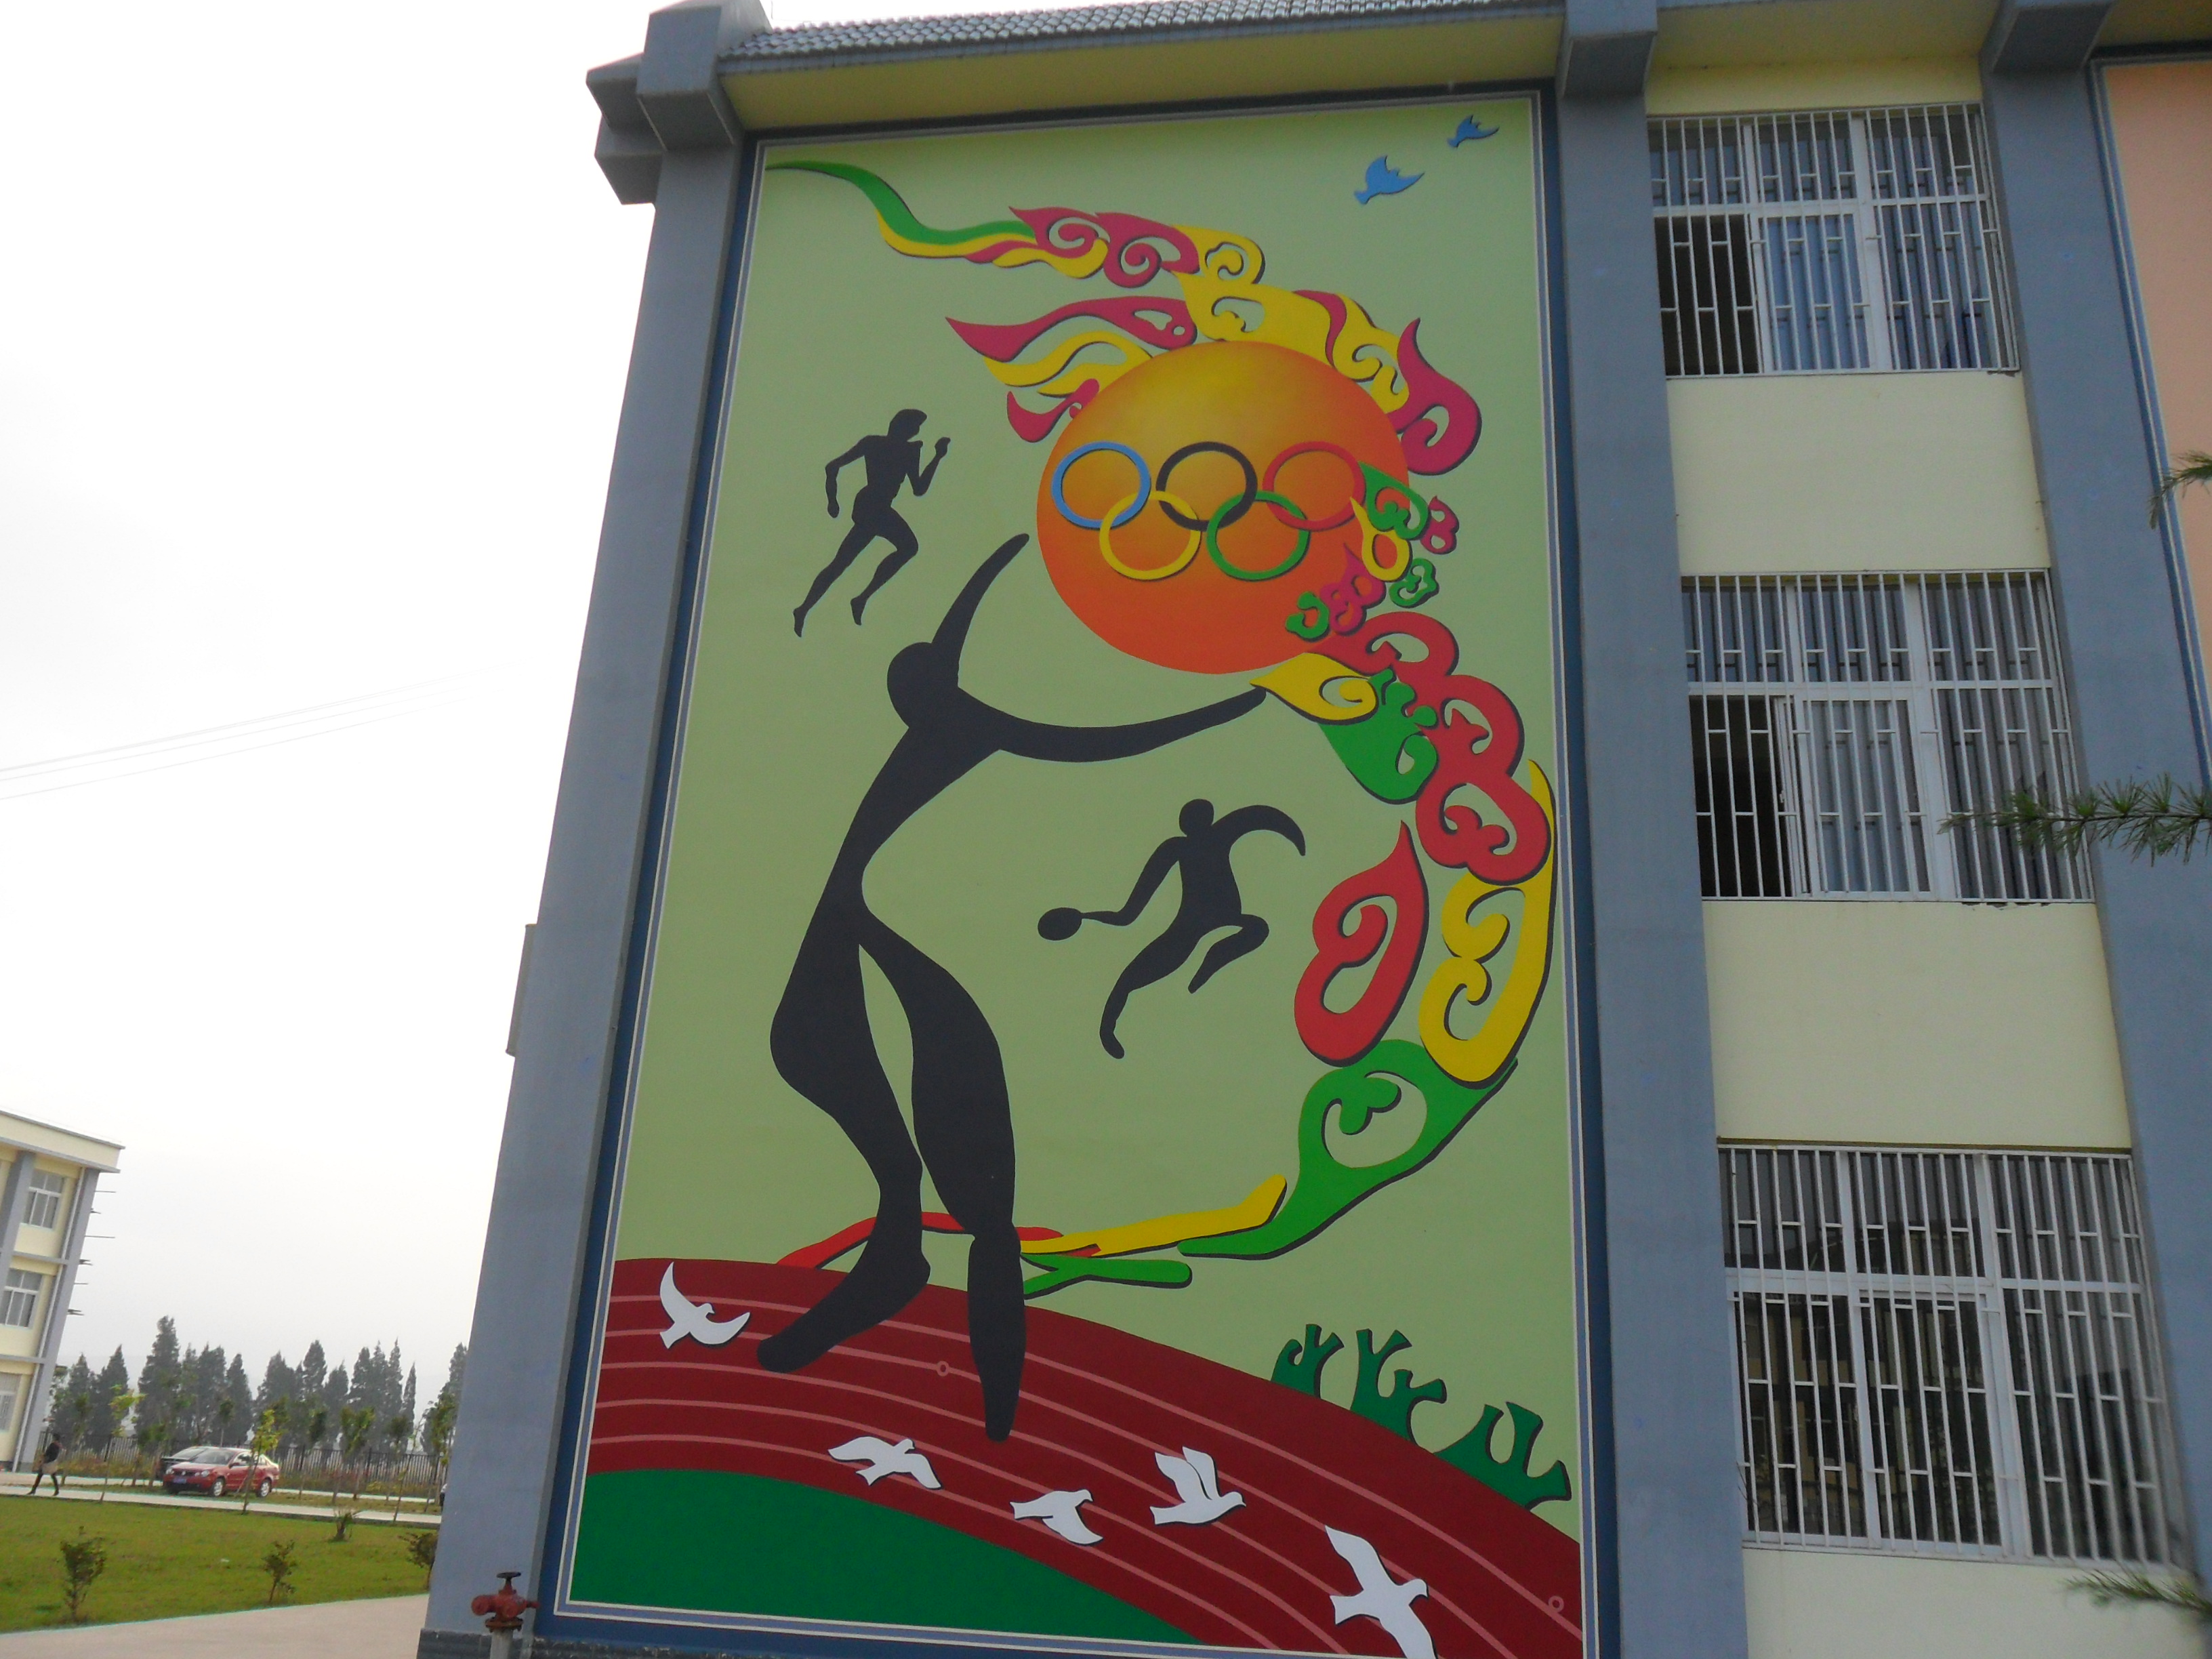 云南校园文化建设墙体彩绘昆明校园文化建设文